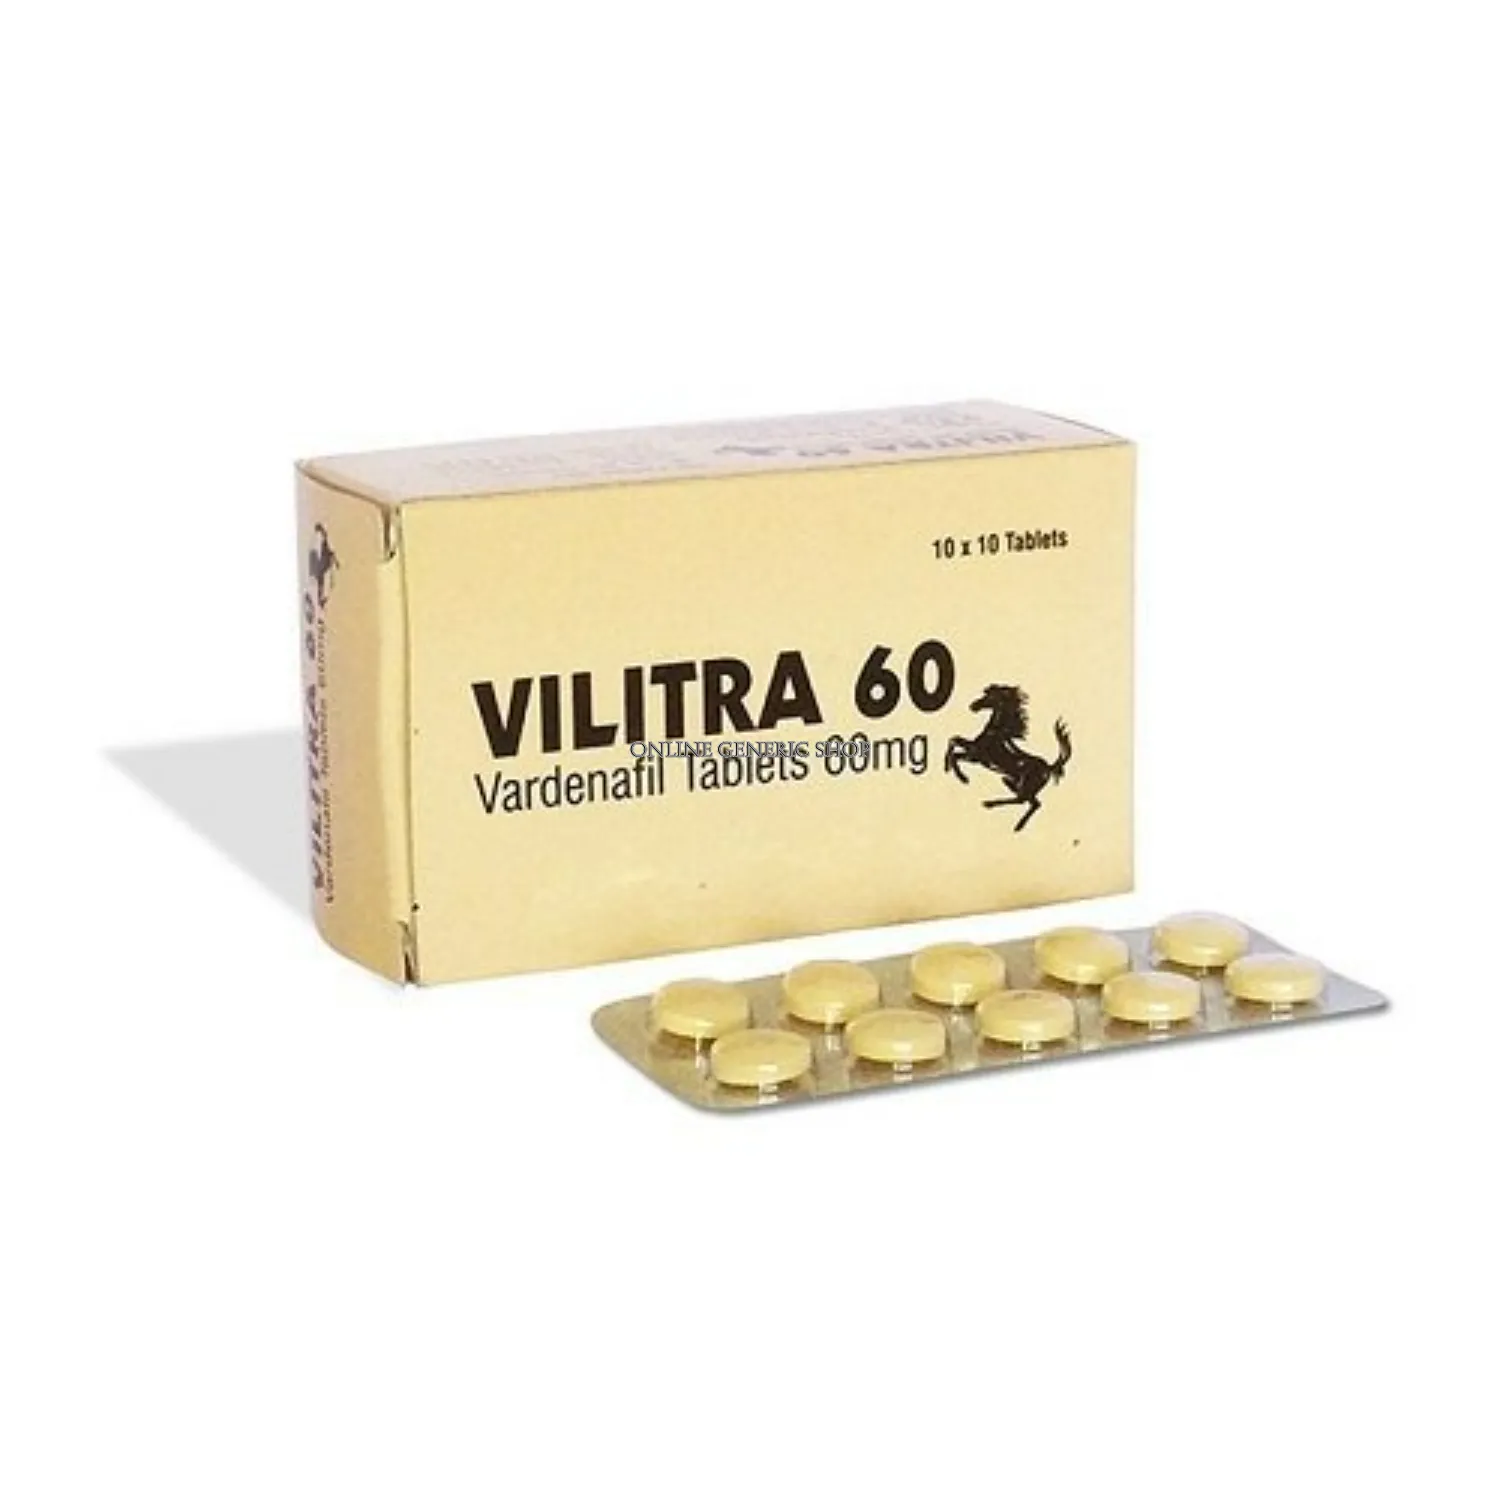 vilitra-60-mg                    